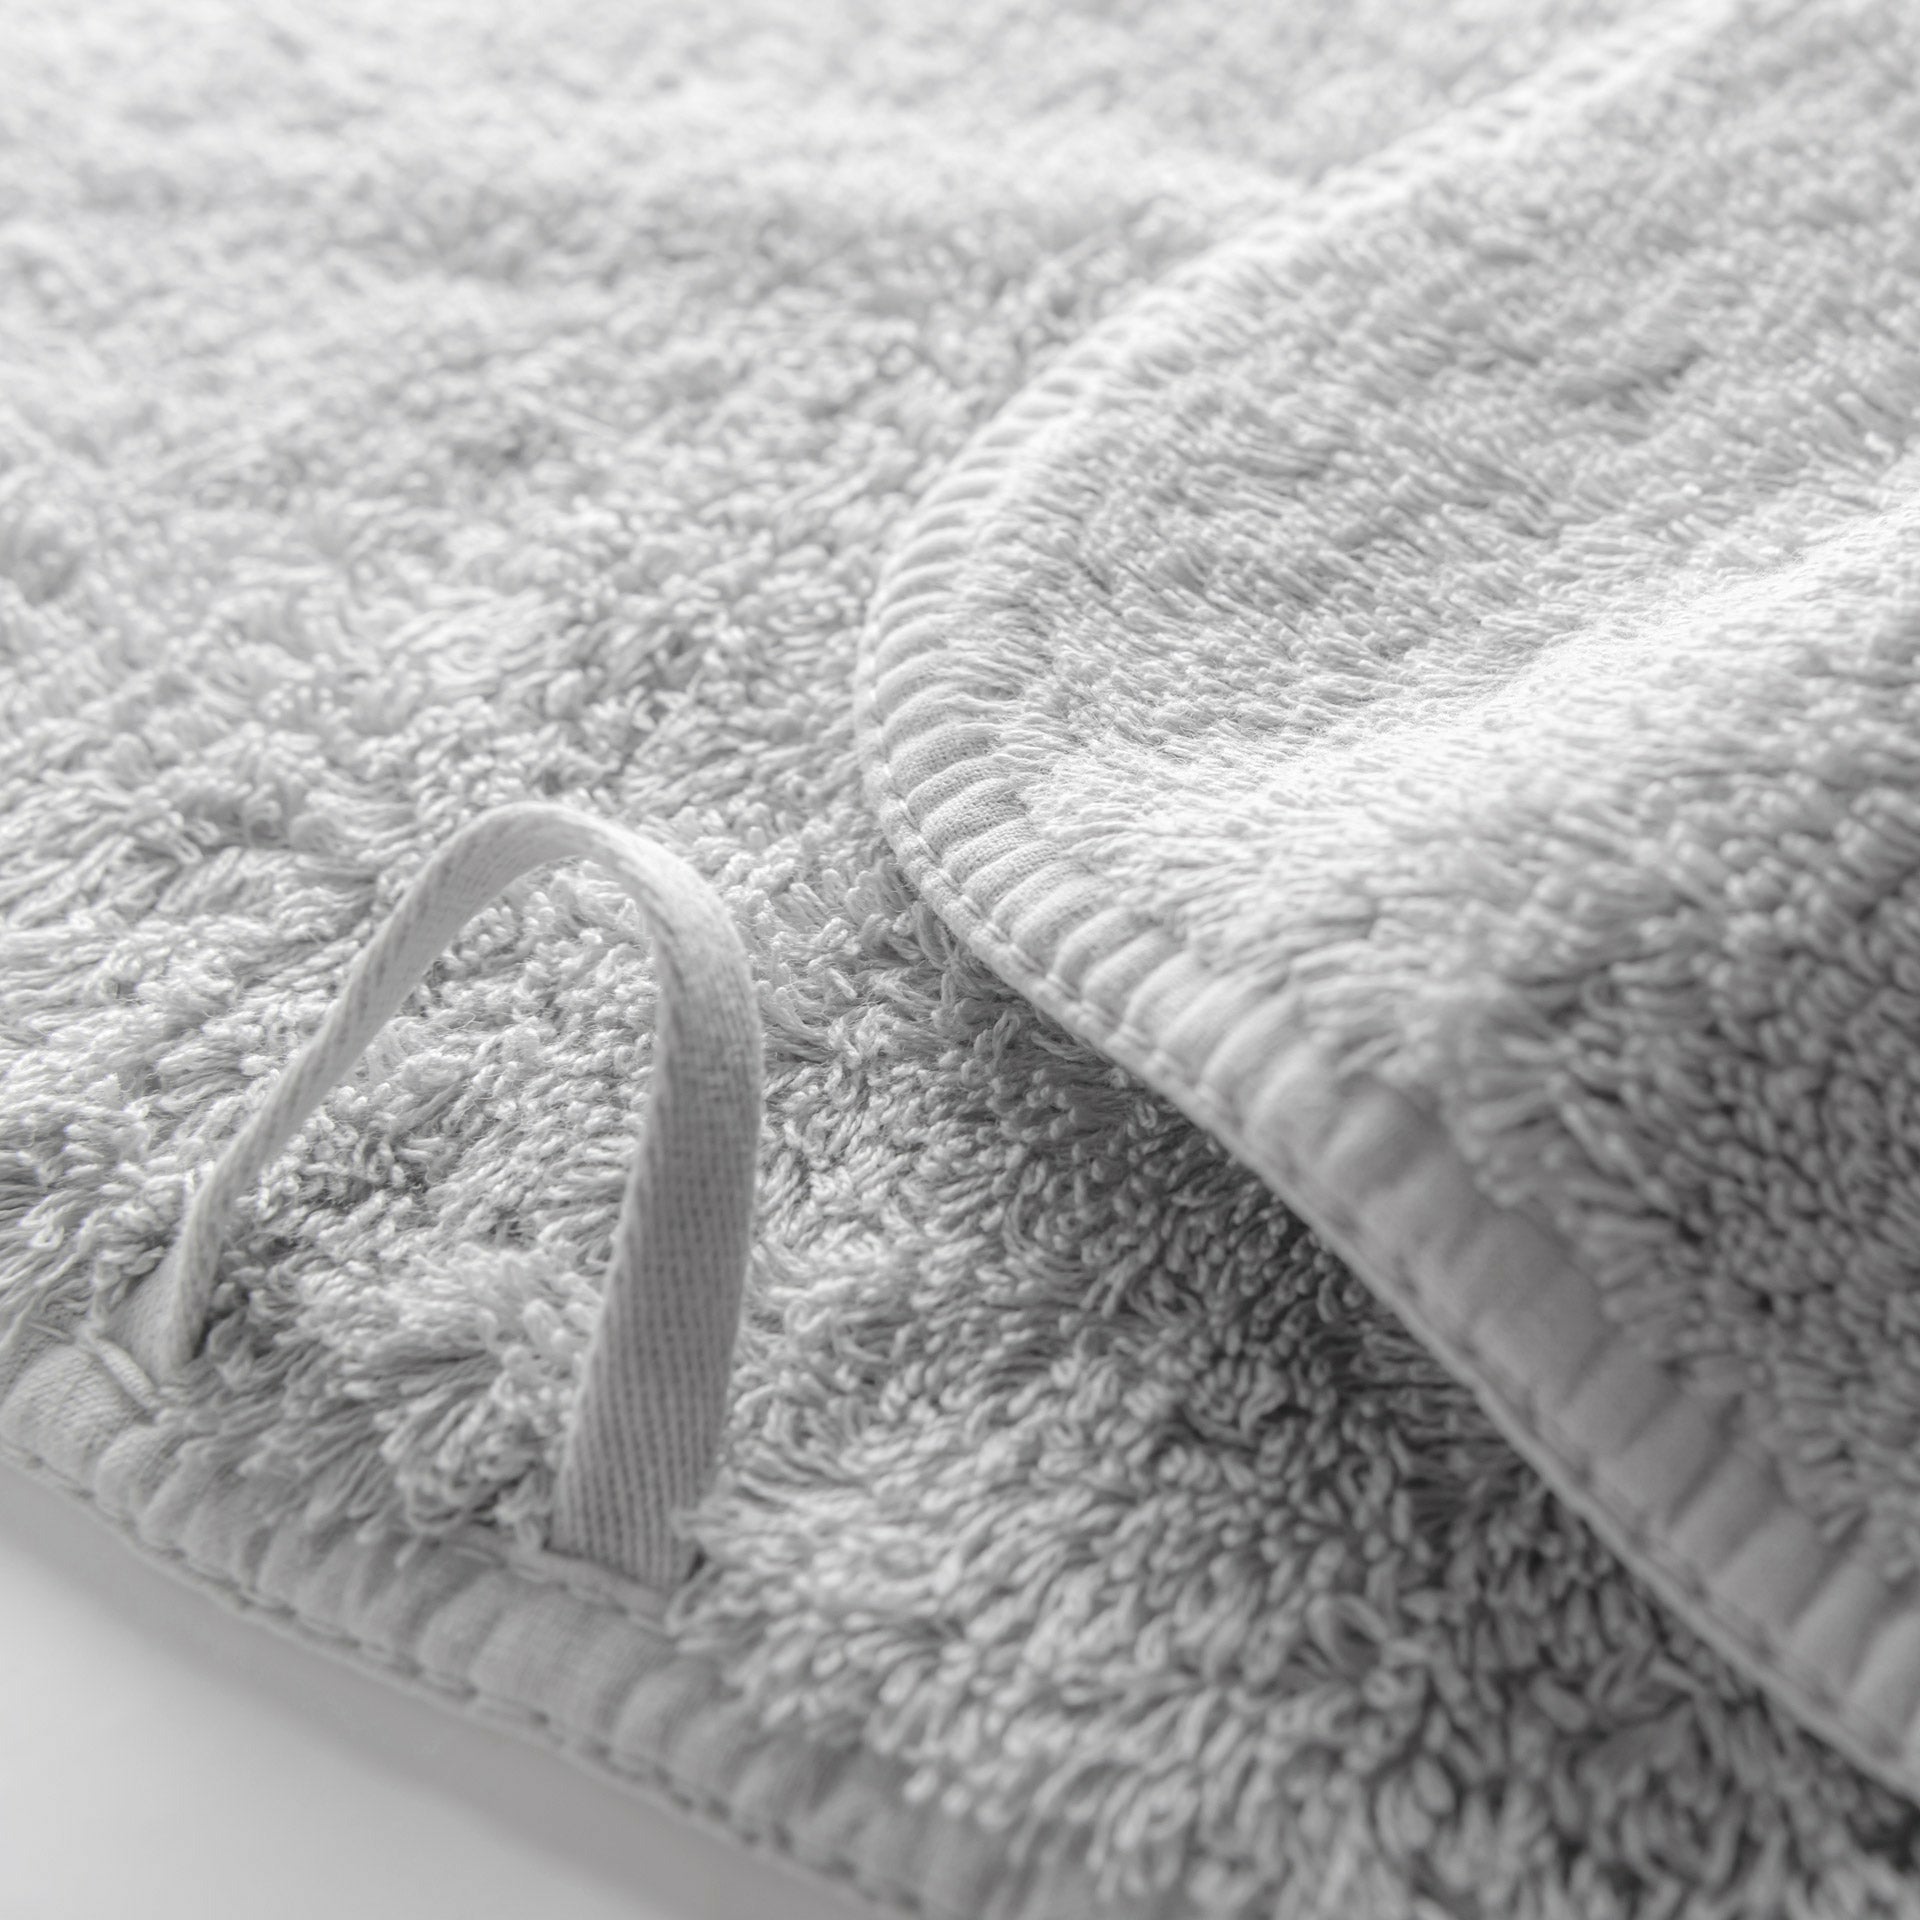 https://flandb.com/cdn/shop/products/Graccioza-Long-Double-Loop-Bath-Towels-Closeup-Silver_5000x.jpg?v=1660862692